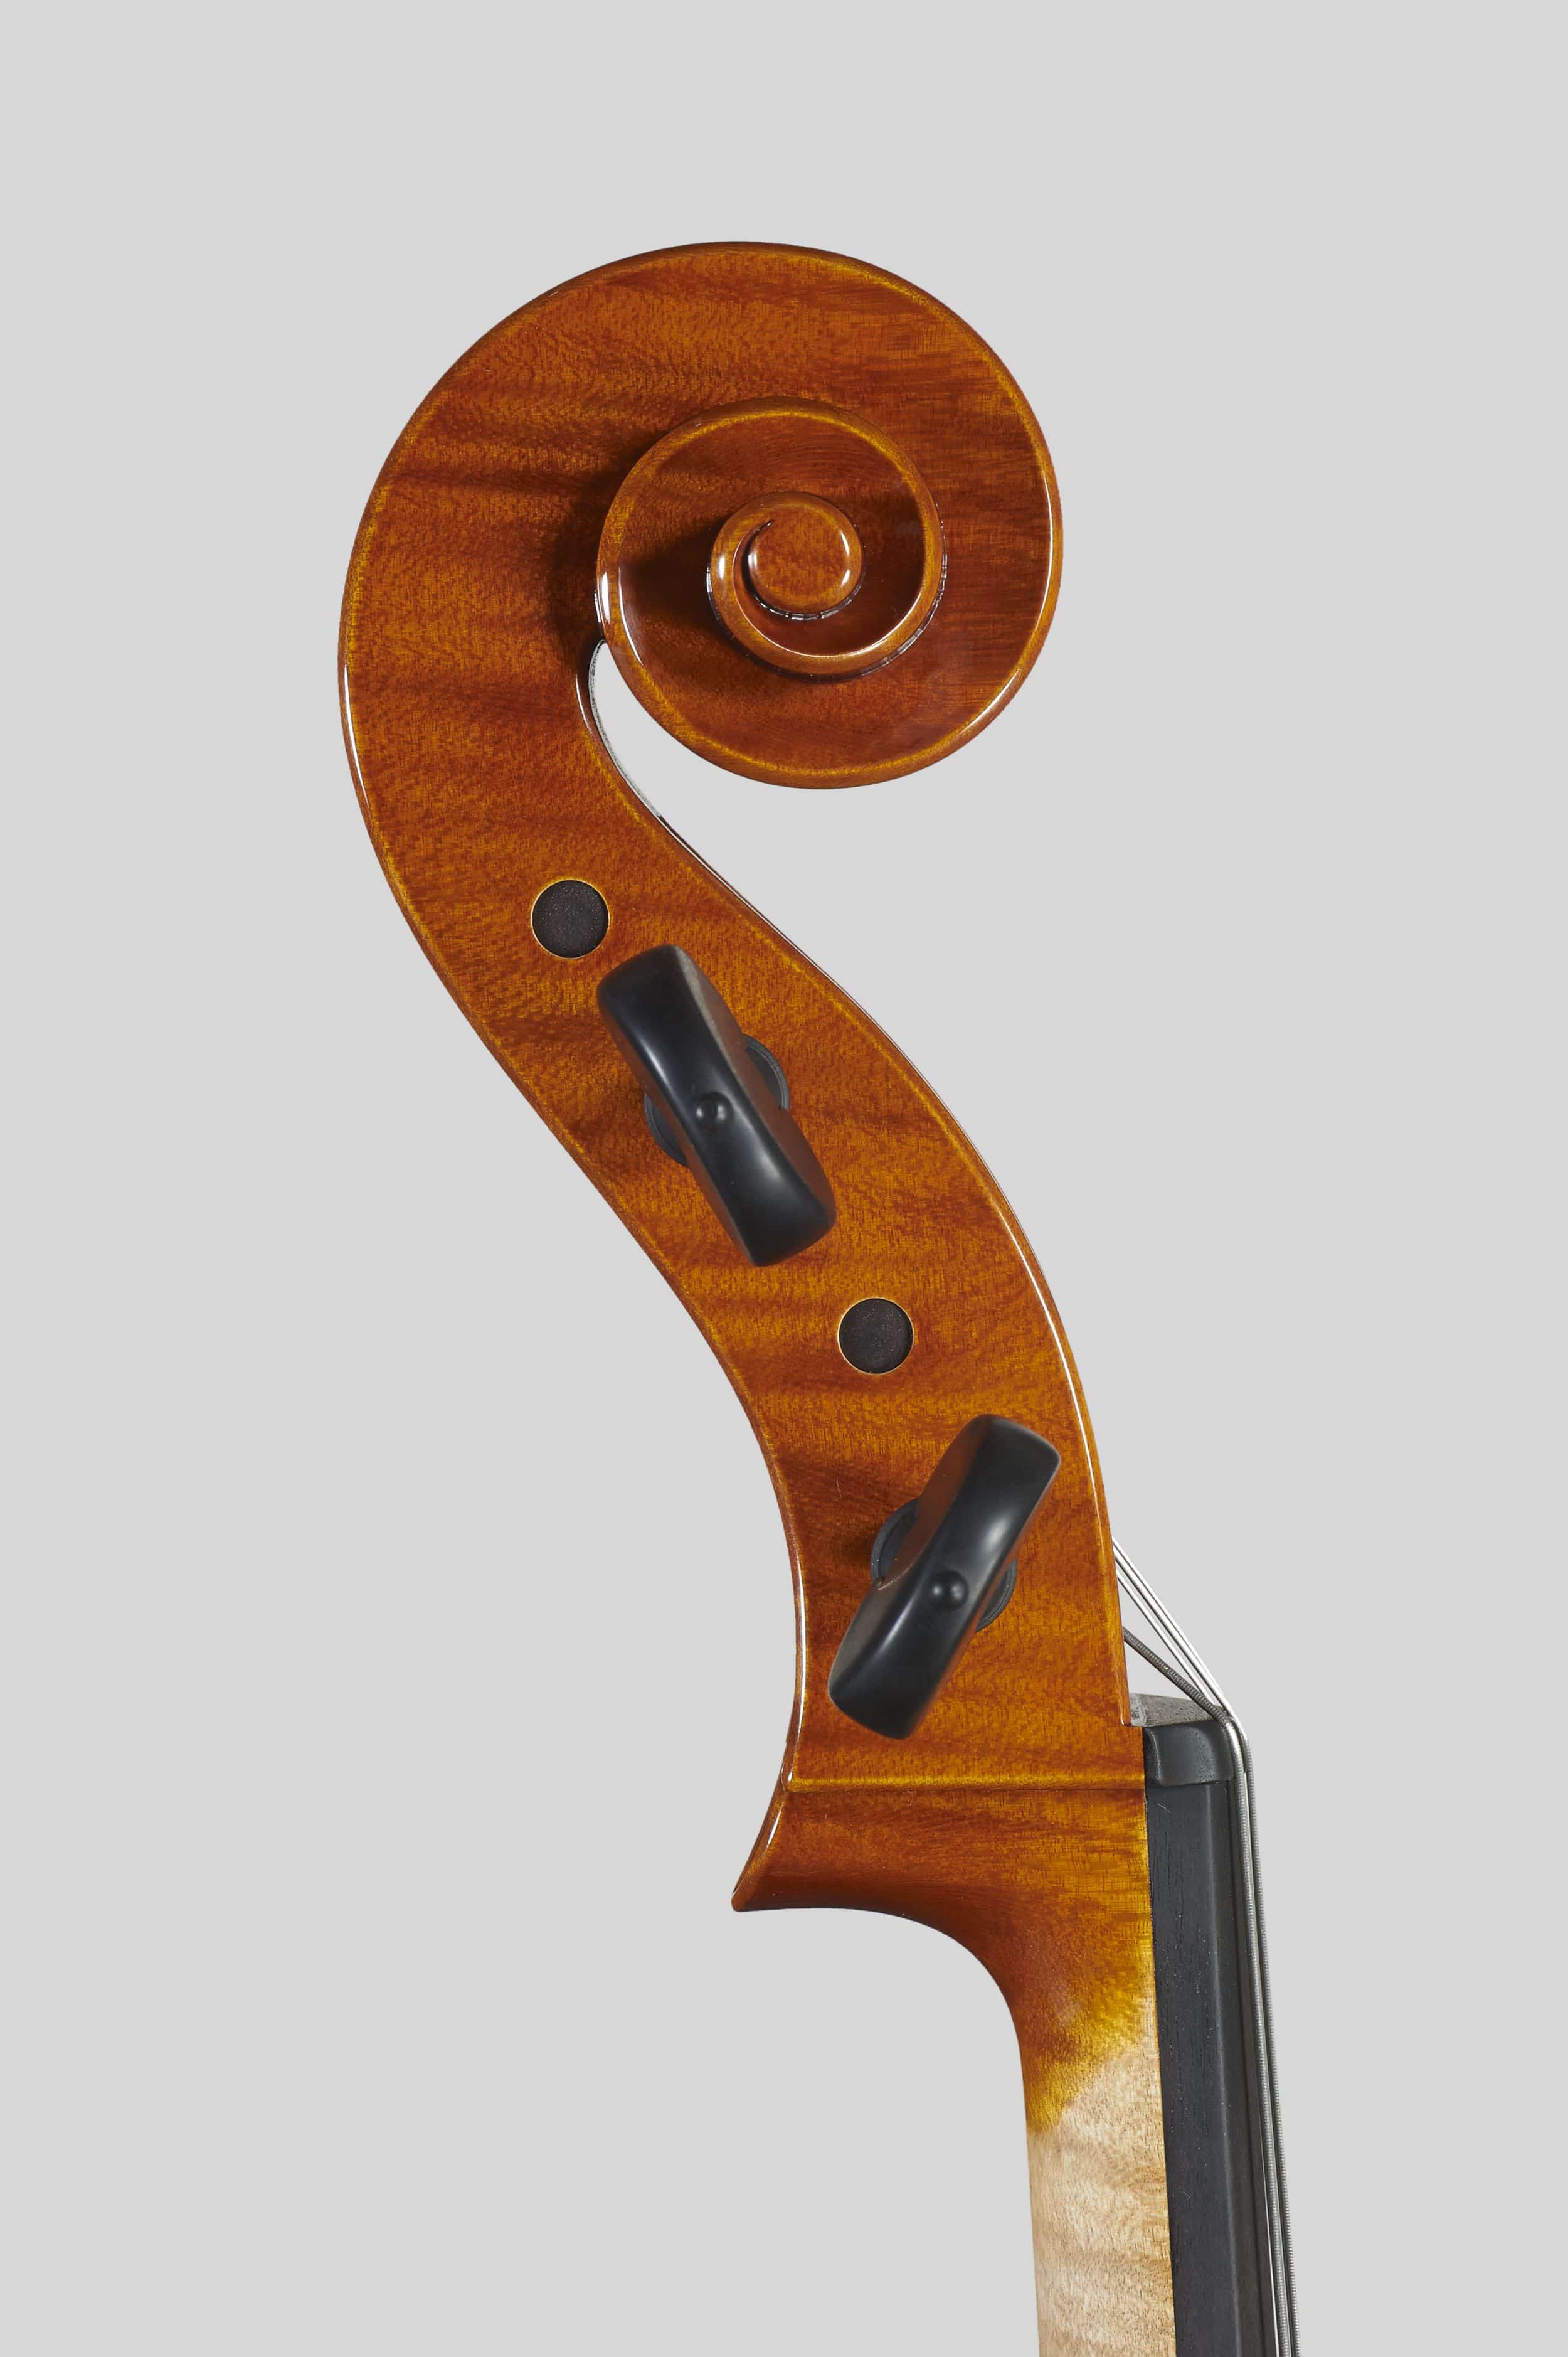 Anno 2012 – Violoncello modello stile A. Stradivari “forma B” - “Mara” 1711 - Testa sinistra